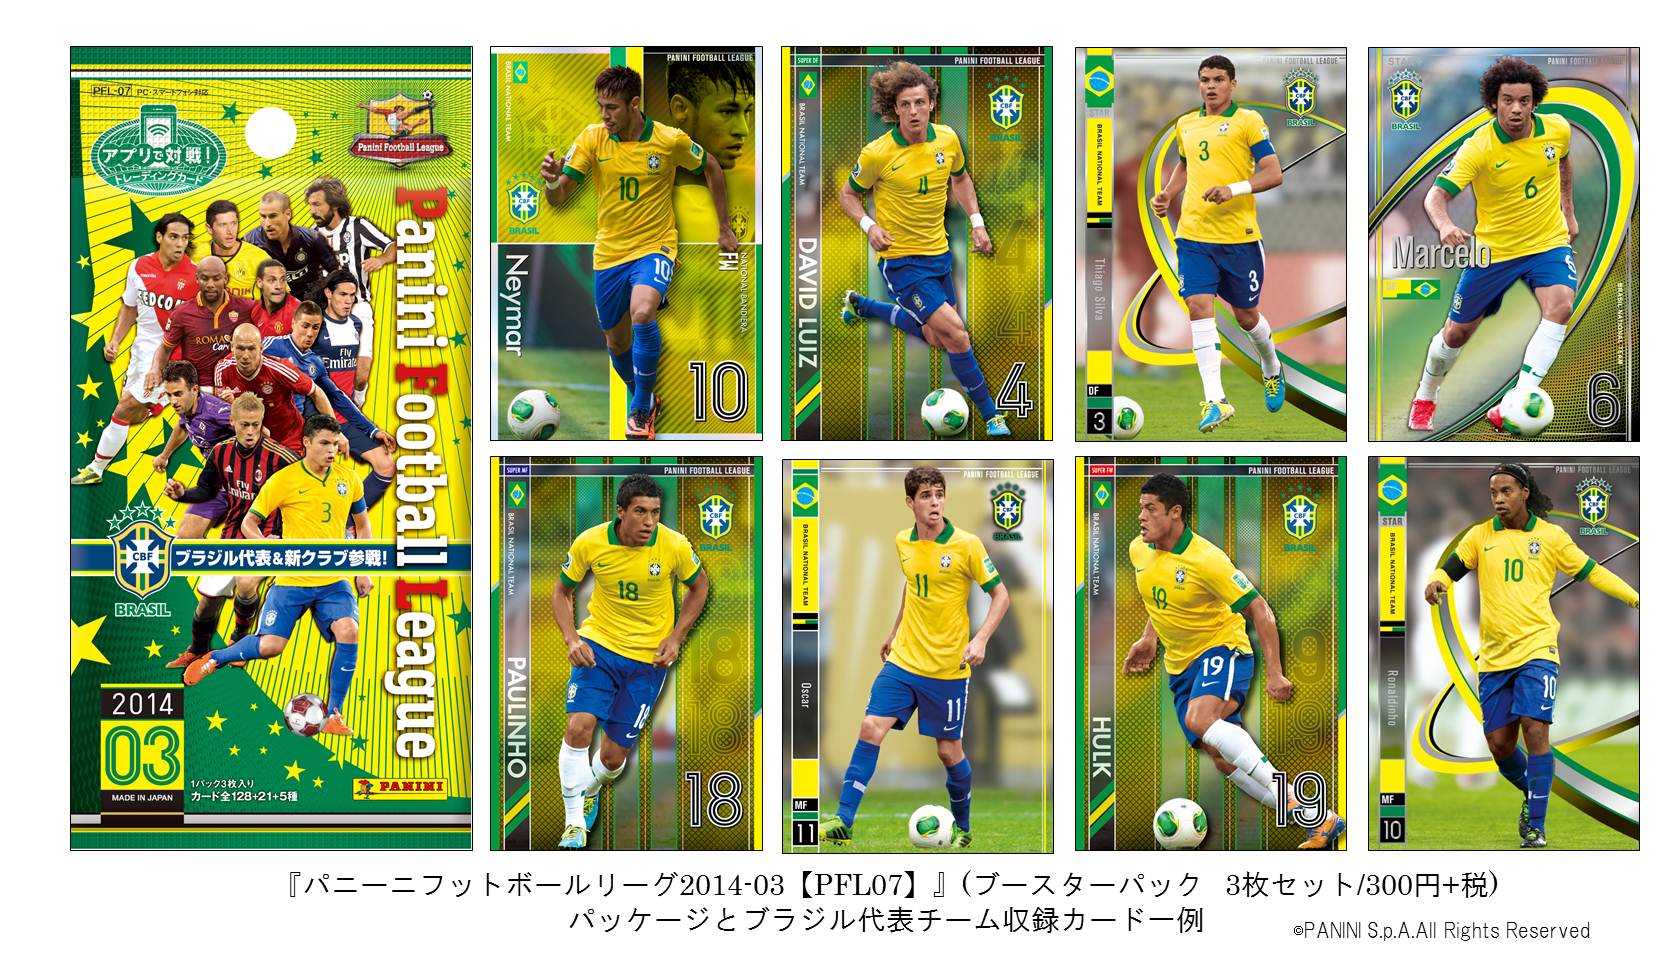 アプリで戦うワールドサッカーカードゲーム パニーニフットボールリーグ 14 03 Pfl07 に サッカー王国 ブラジル 代表参戦 株式会社バンダイのプレスリリース